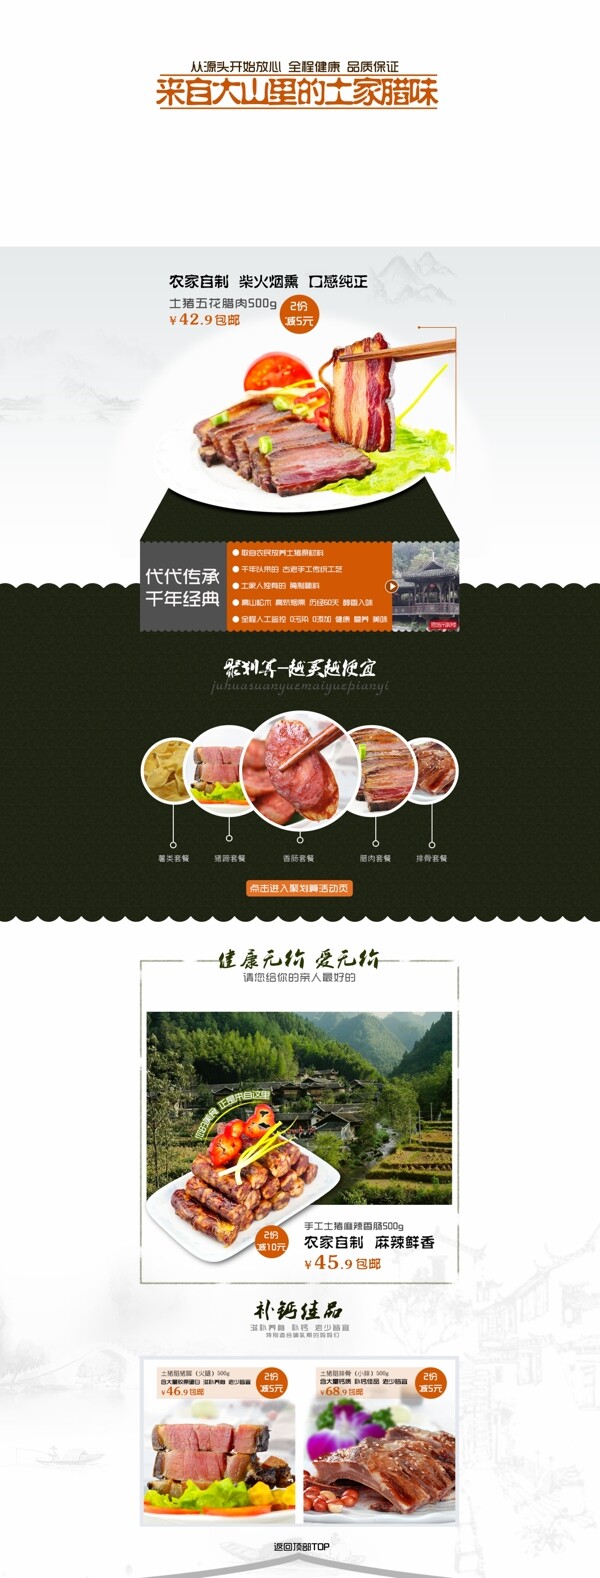 天猫淘宝首页美食品中国风模板高清PSD